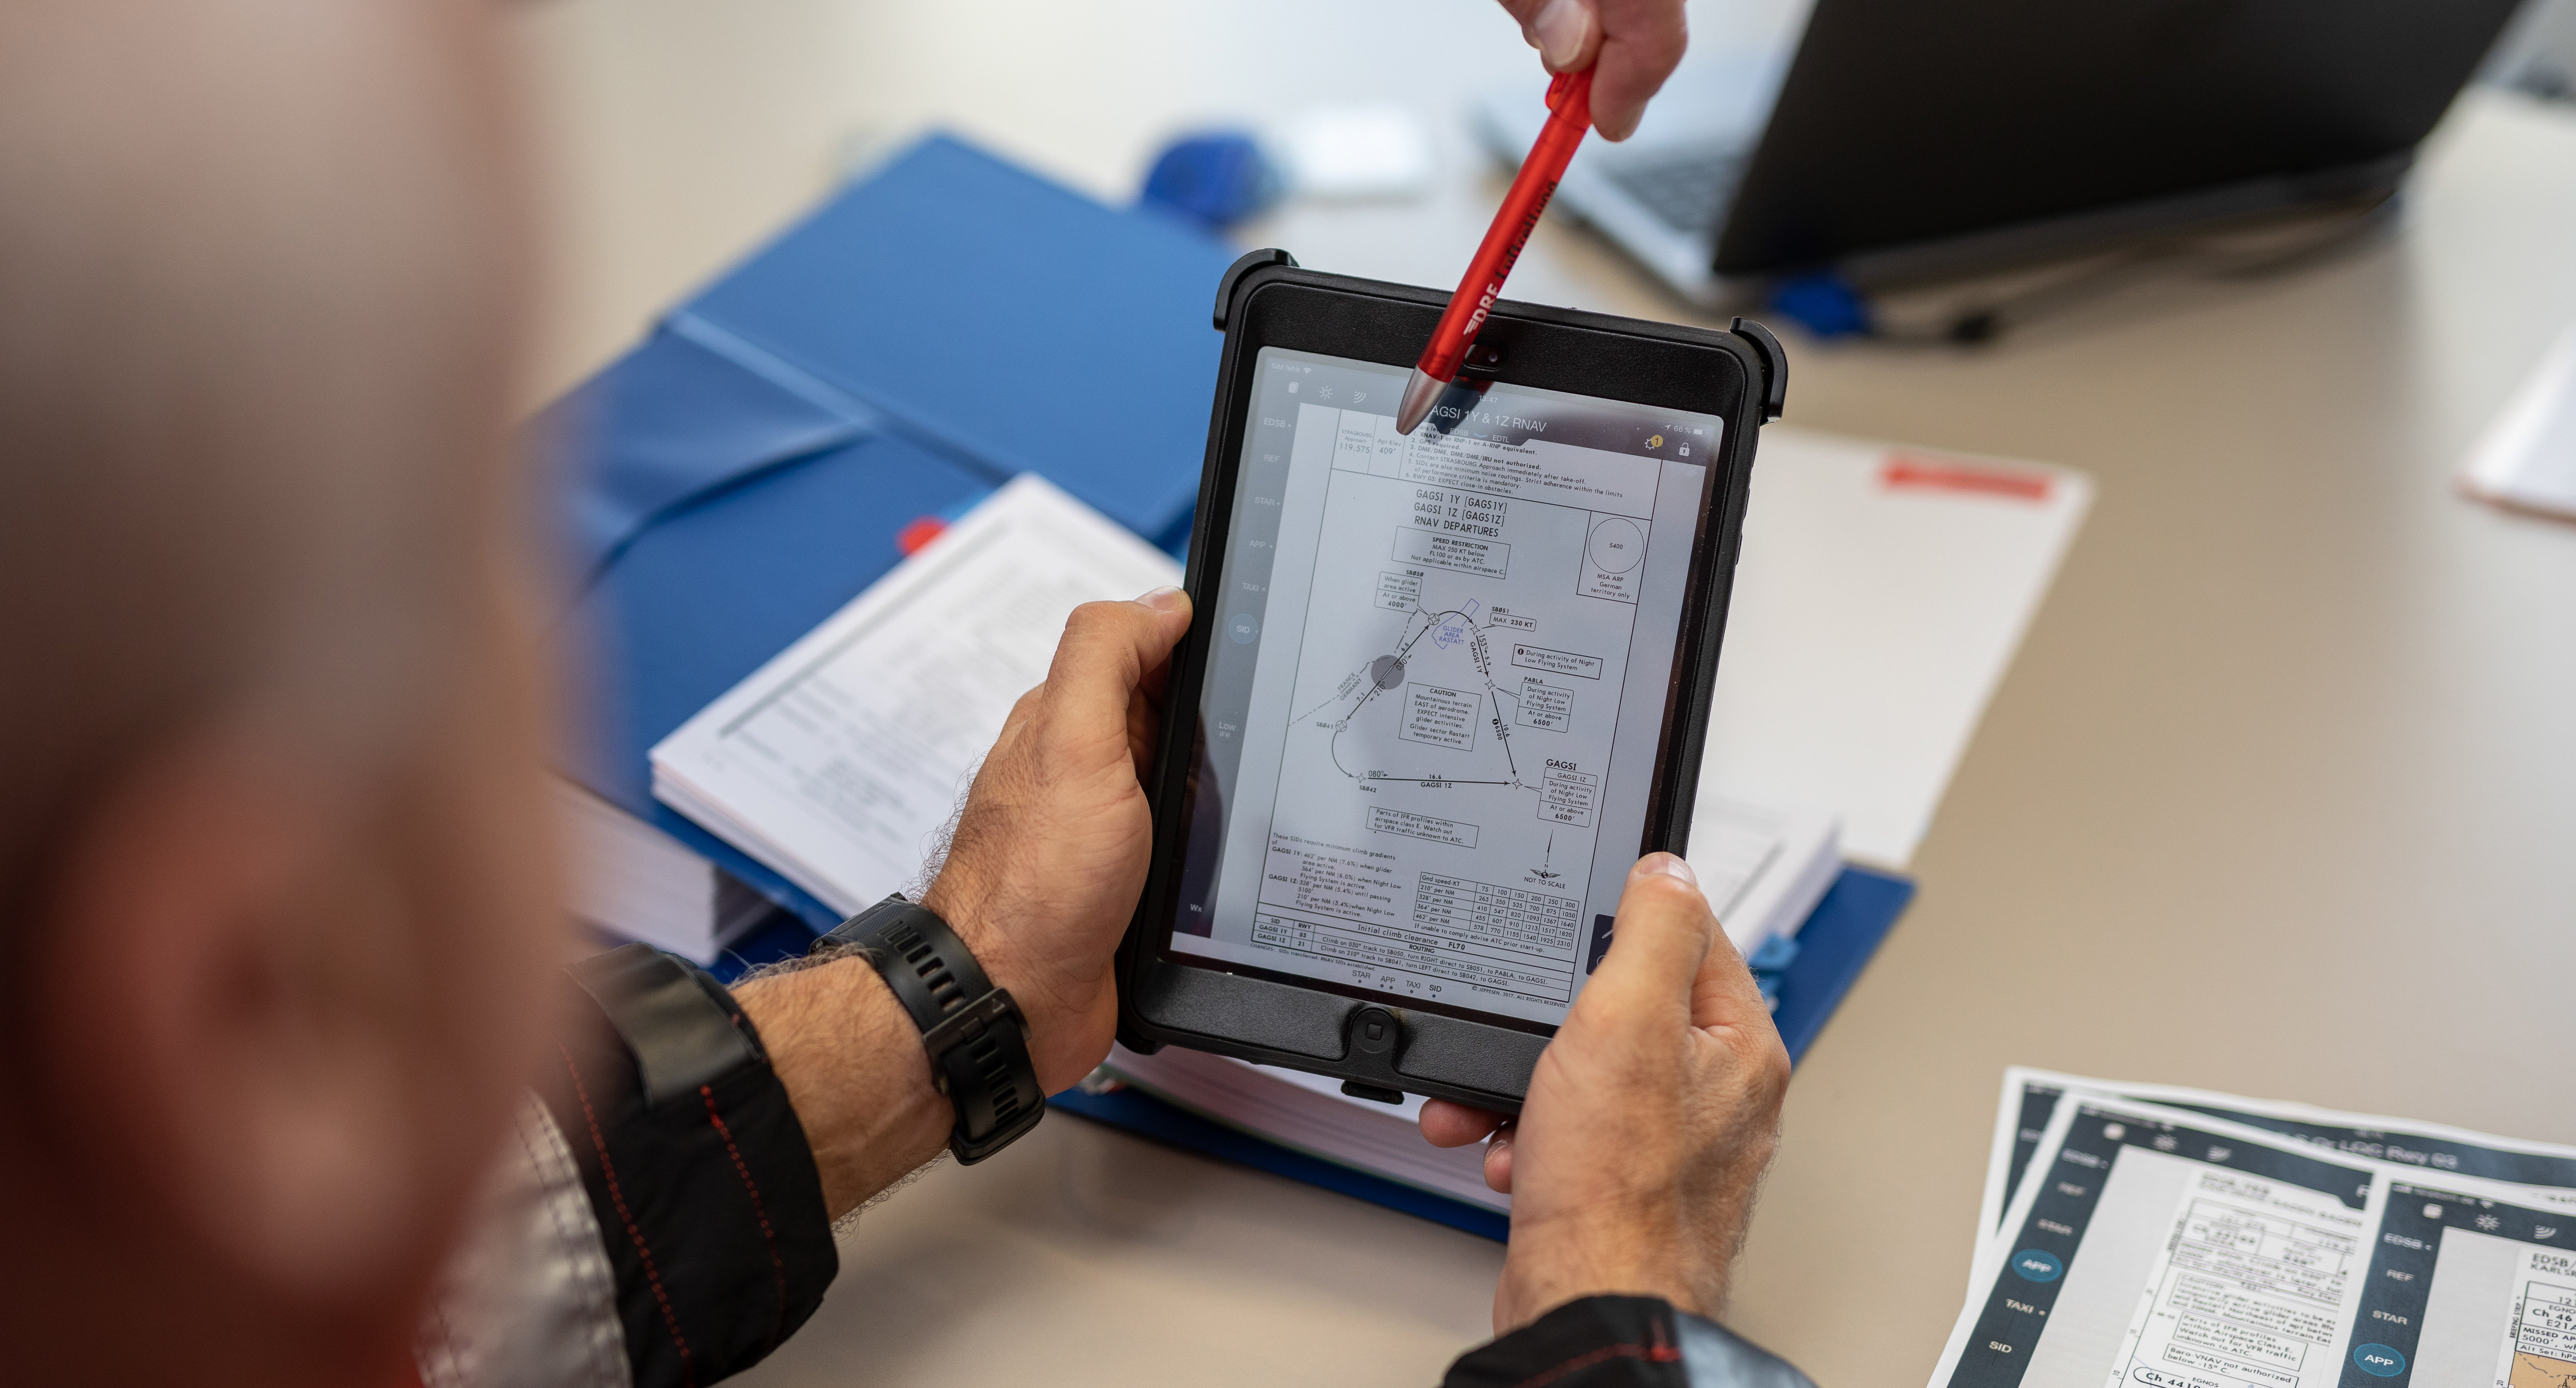 Blick auf Lerninhalte auf einem iPad, das jemand in den Händen hält.